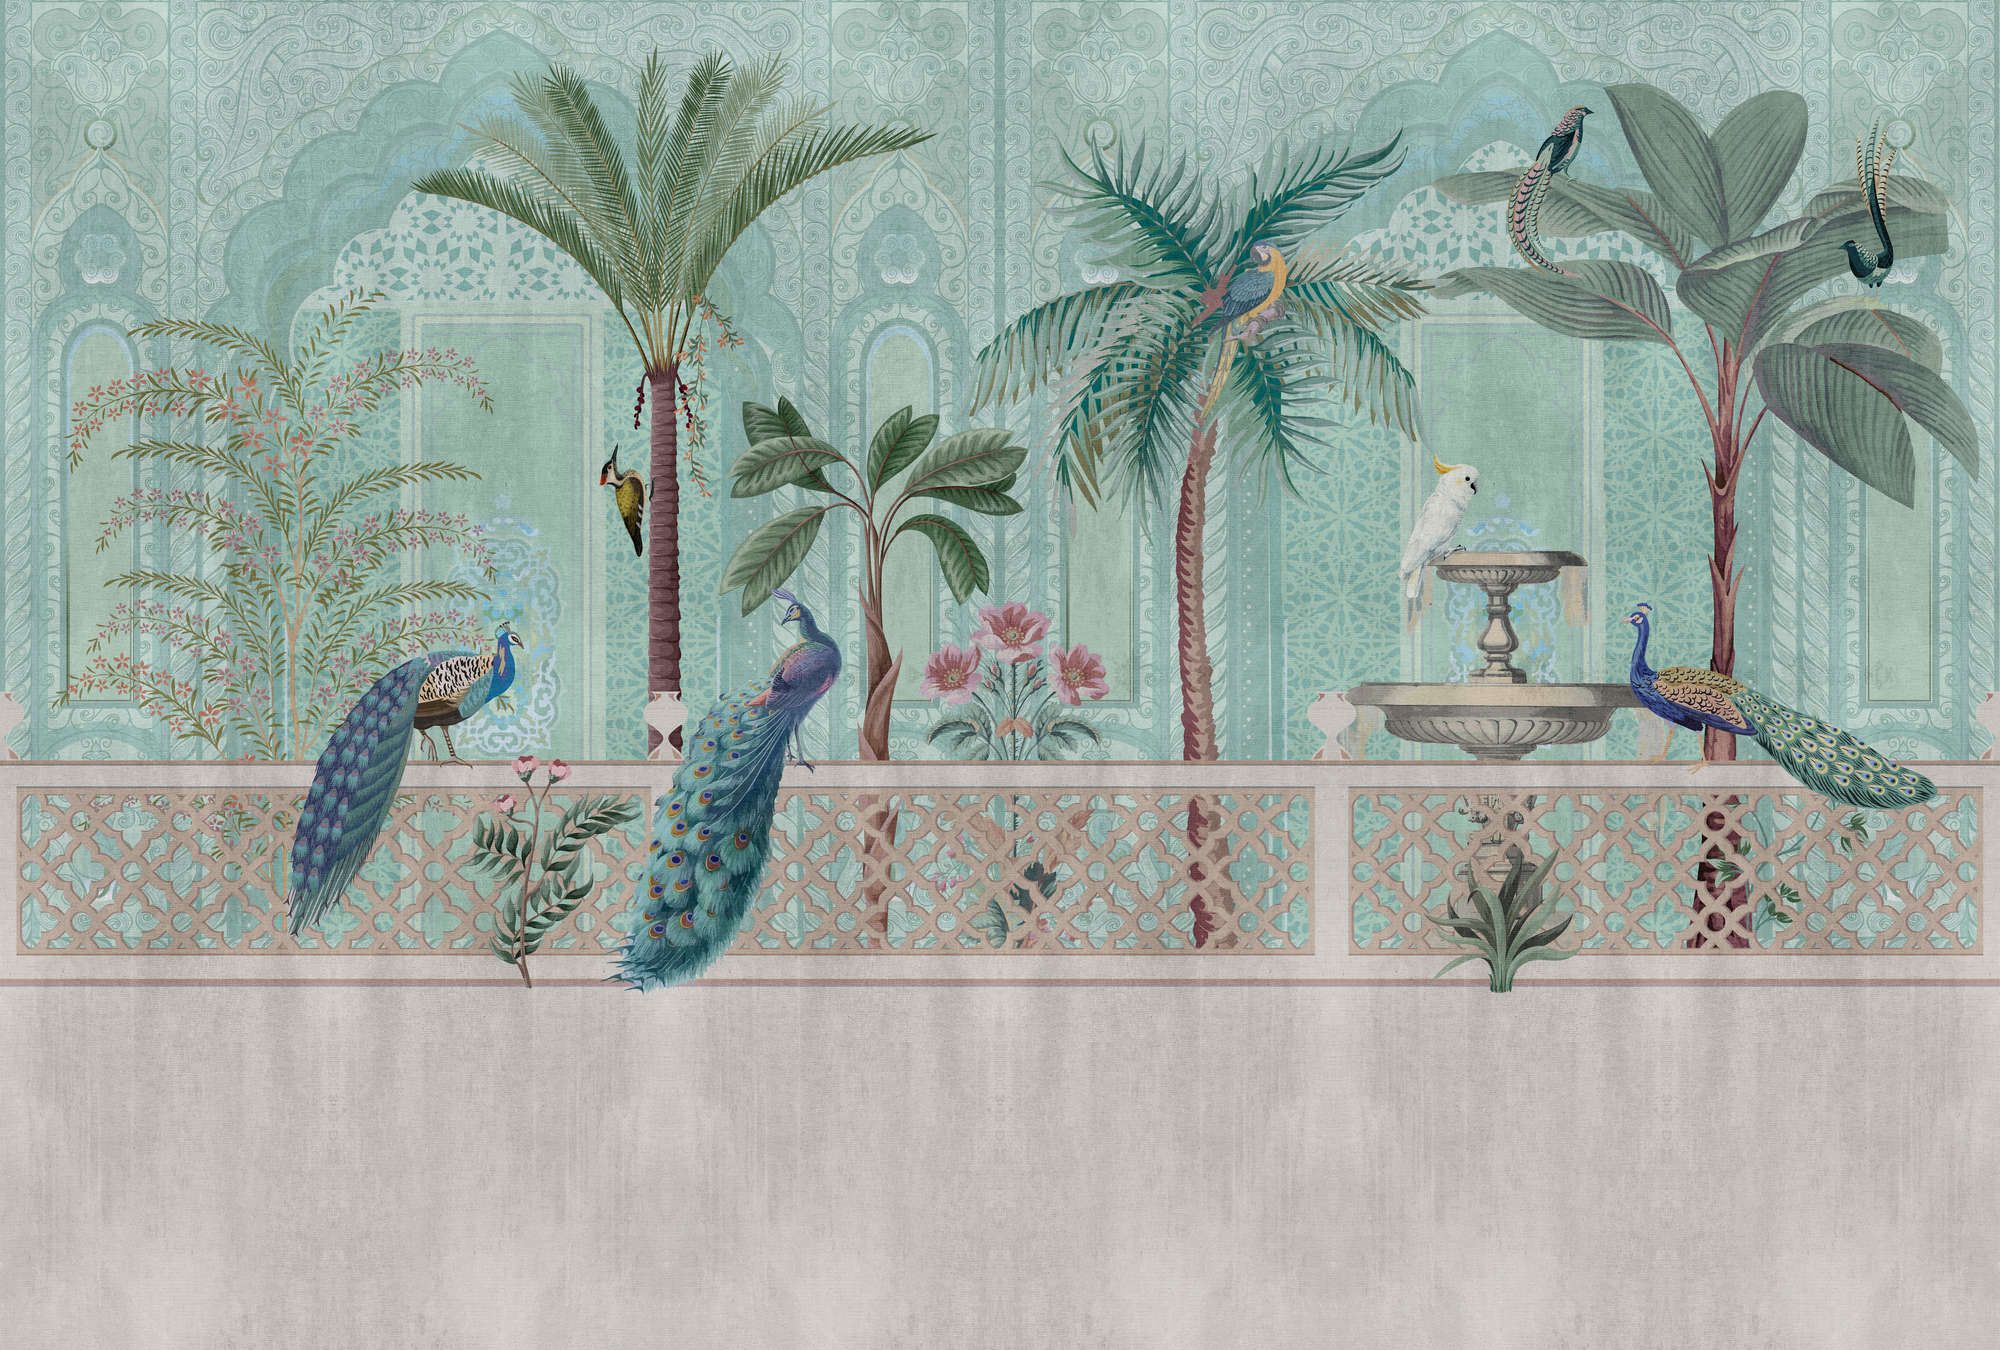             Fotomurali »pavo« - Uccelli, palme e fontane - Verde, blu con struttura ad arazzo | Materiali non tessuto liscio e leggermente perlato
        